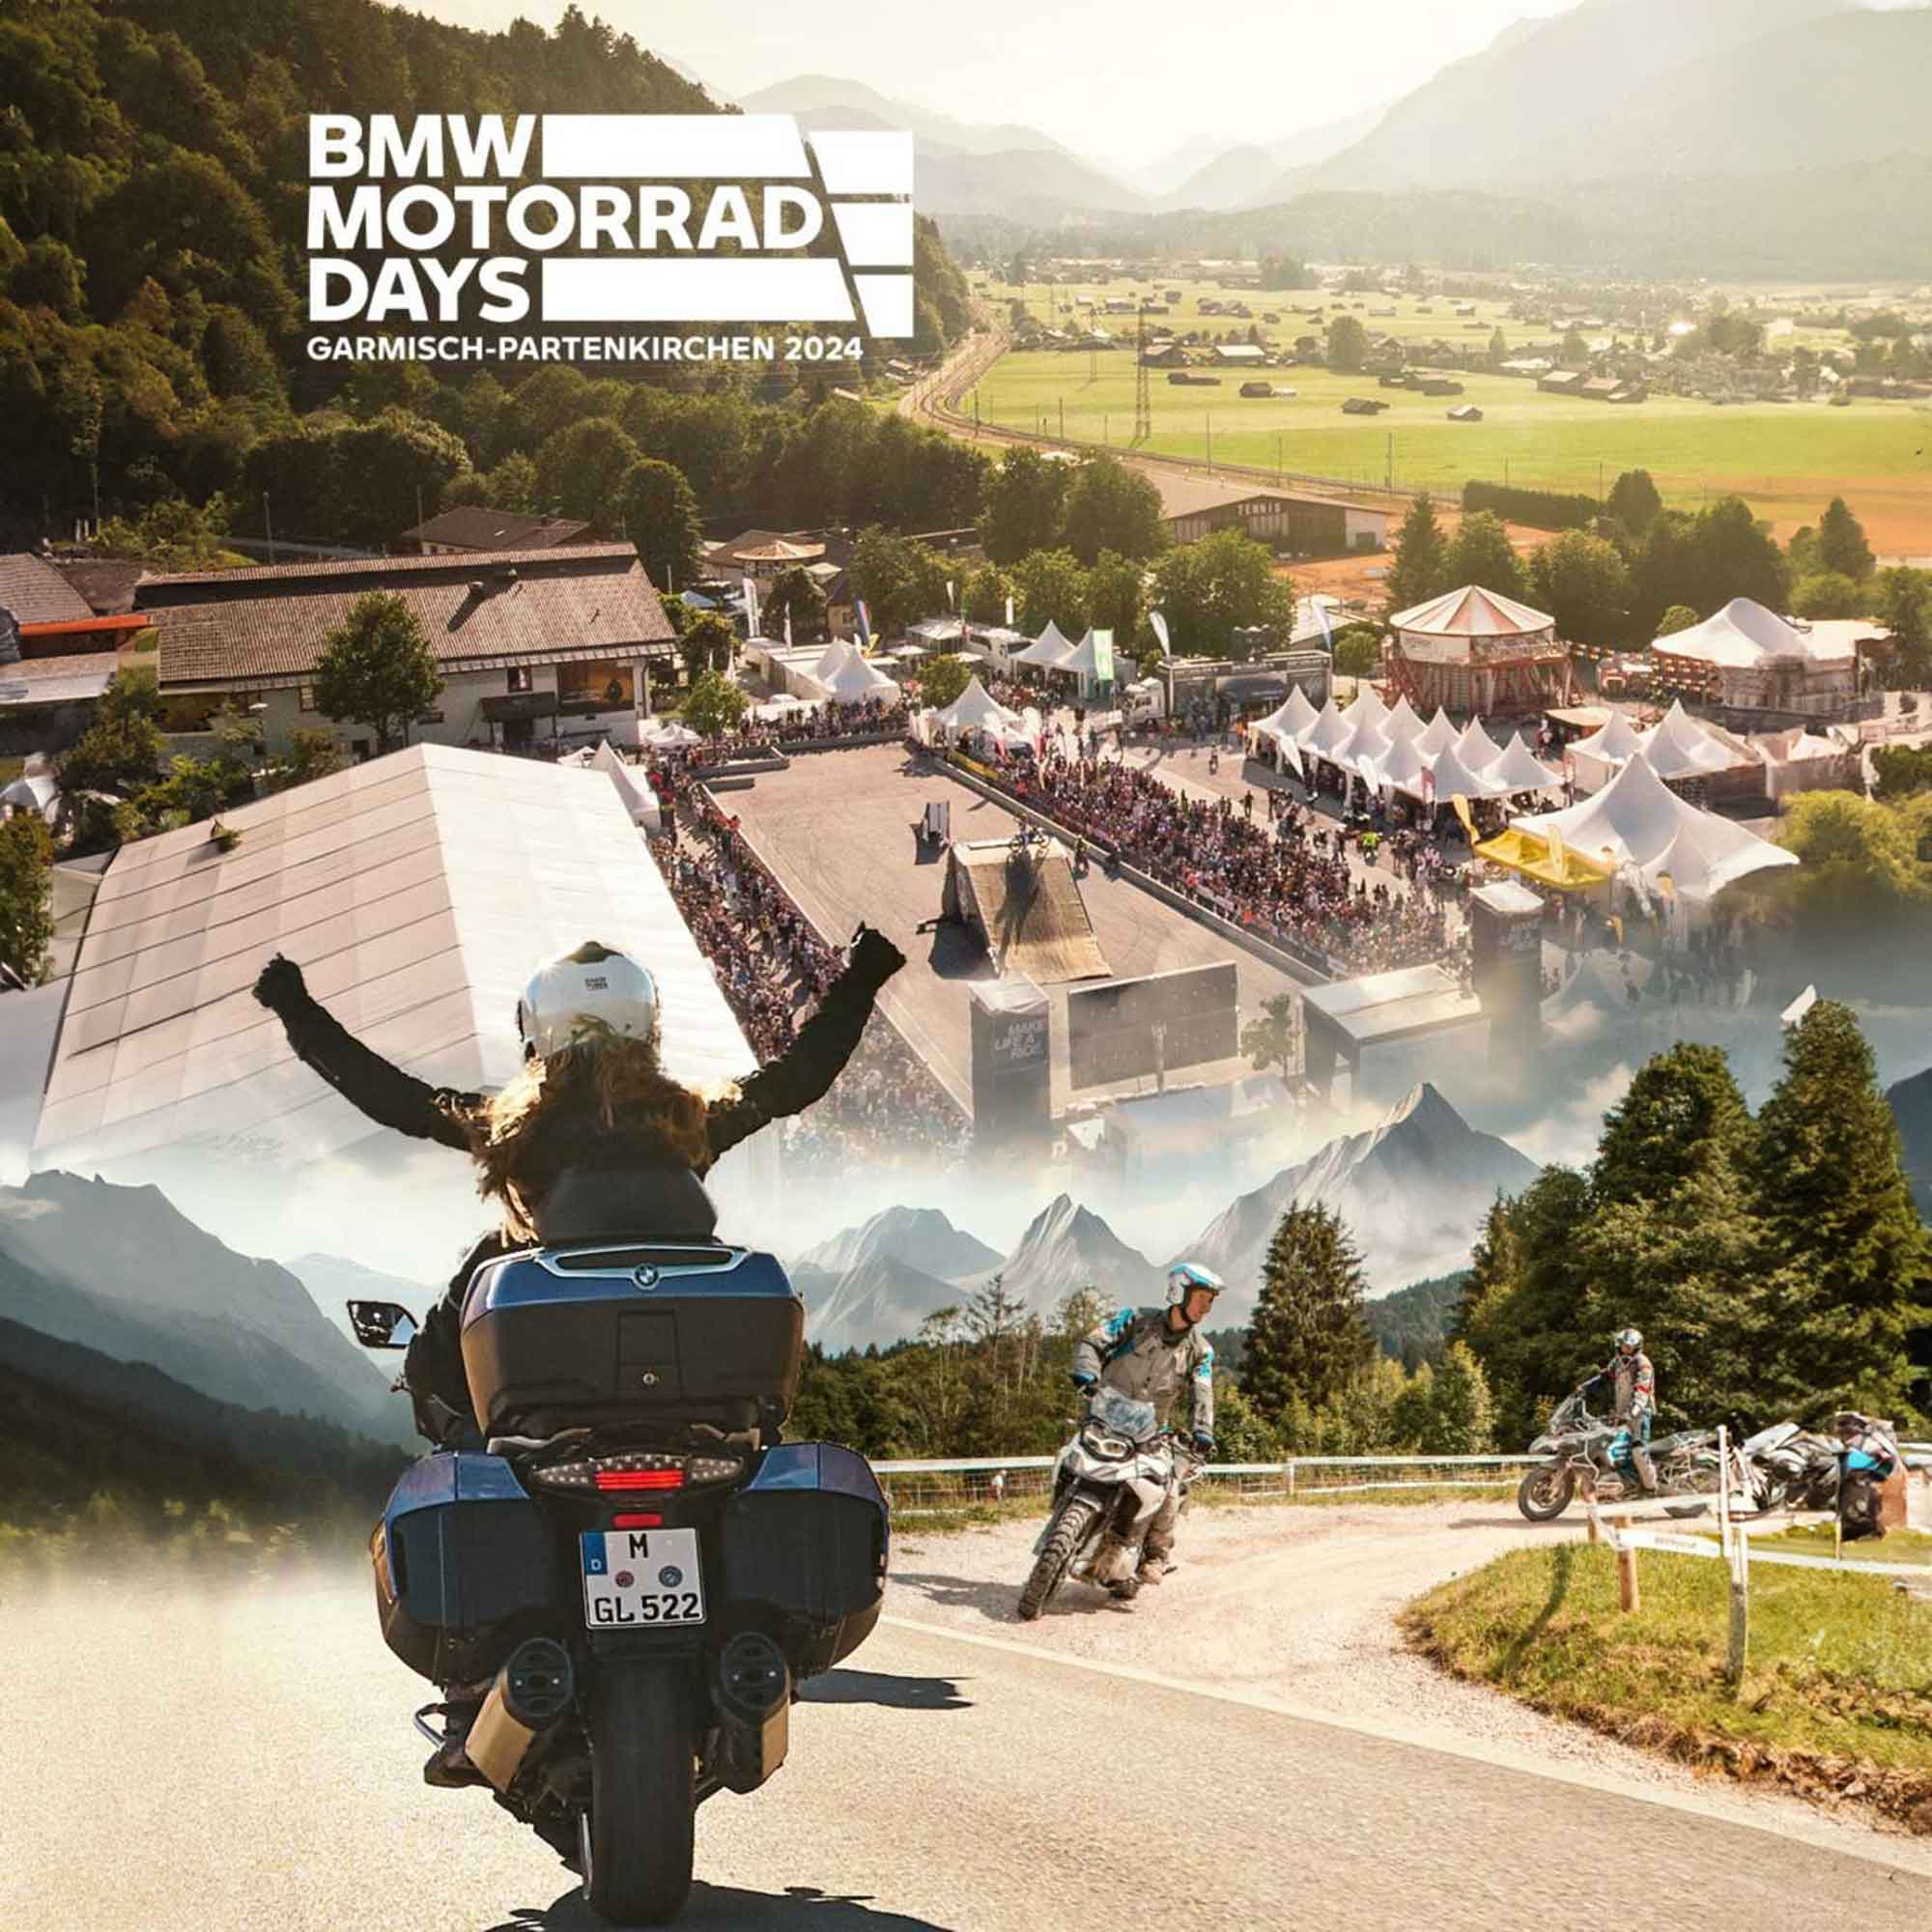 BMW Motorrad bringt die BMW Motorrad Days zurück nach Garmisch Partenkirchen, 5. bis 7. Juli 2024